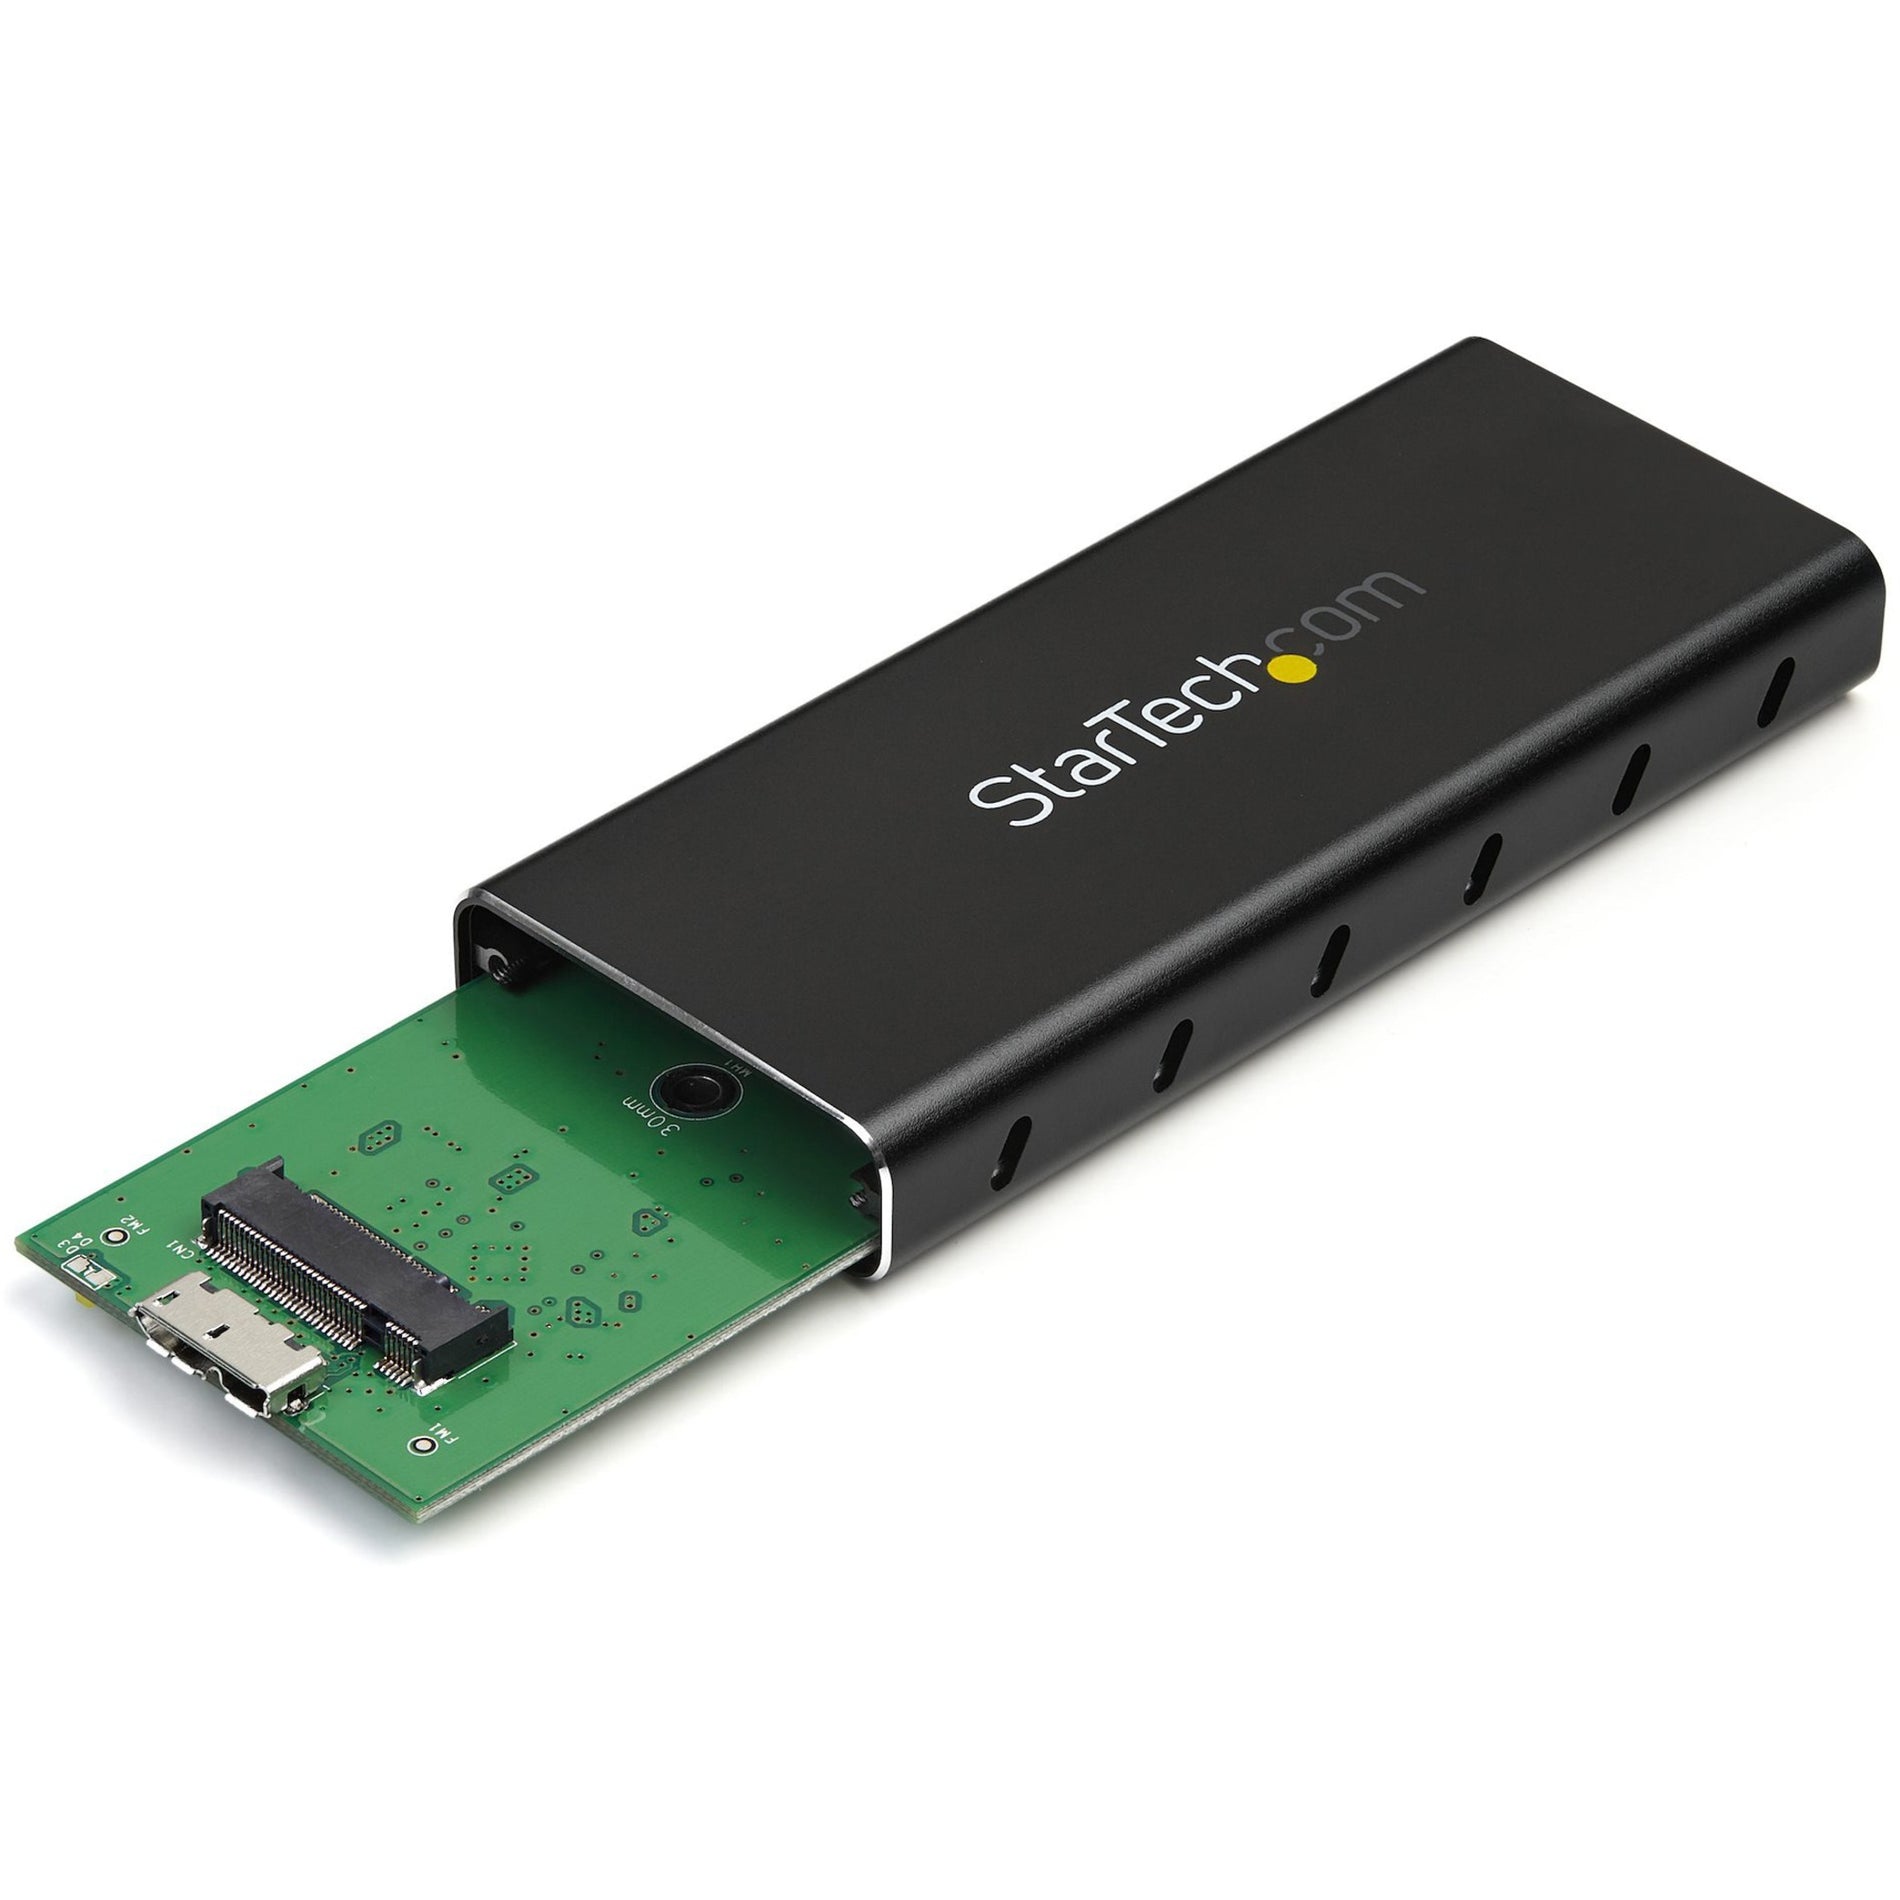 StarTech.com SM21BMU31C3 M.2 NGFF SATA Gehäuse - USB 3.1 Tragbares Aluminium SSD Gehäuse mit USB C Kabel